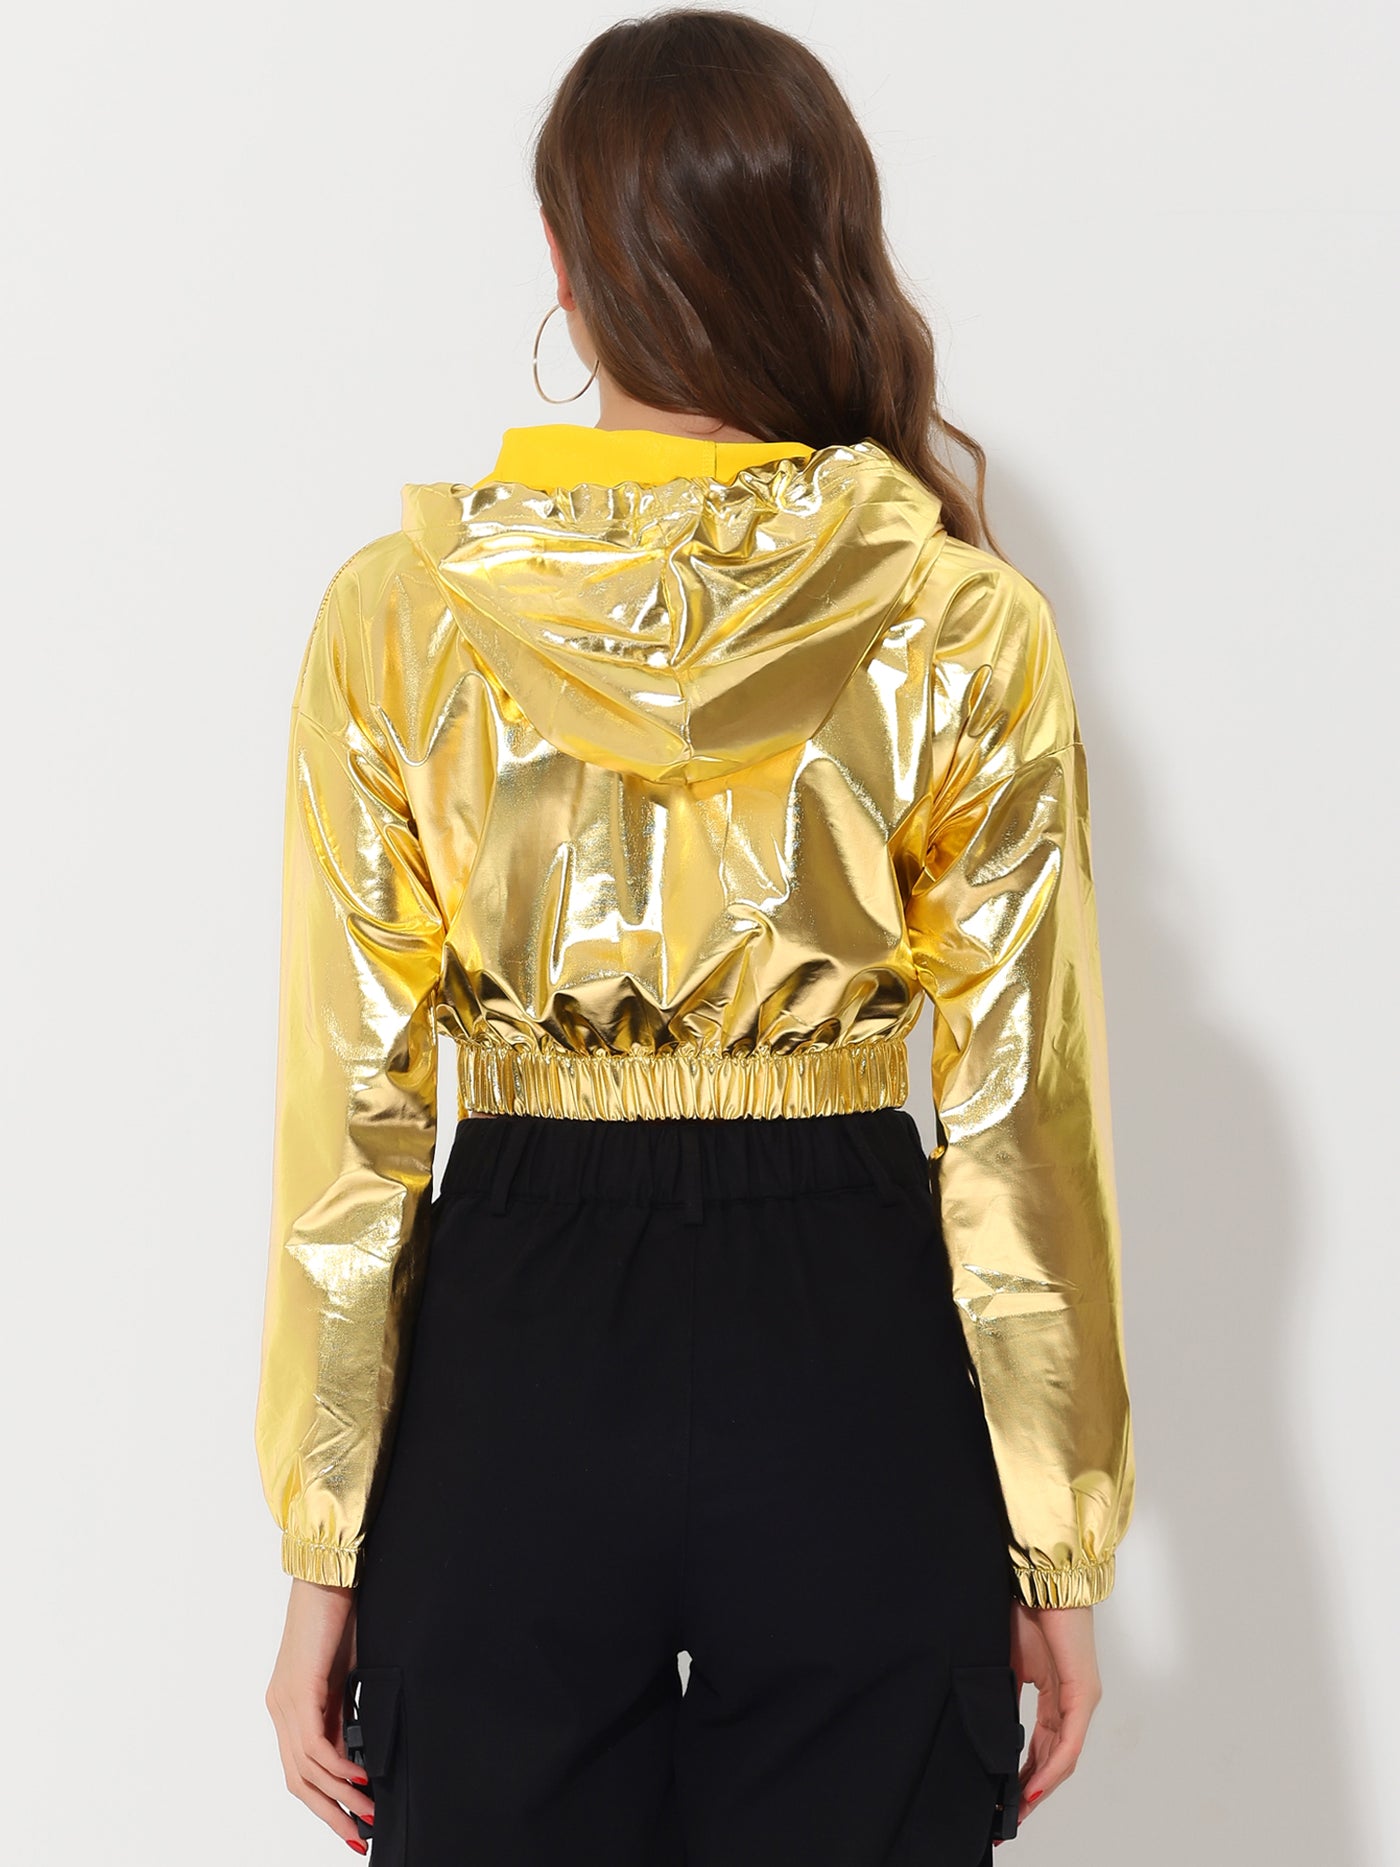 Allegra K Crop Top Hoodies Holographic Shiny Metallic SweatShirt